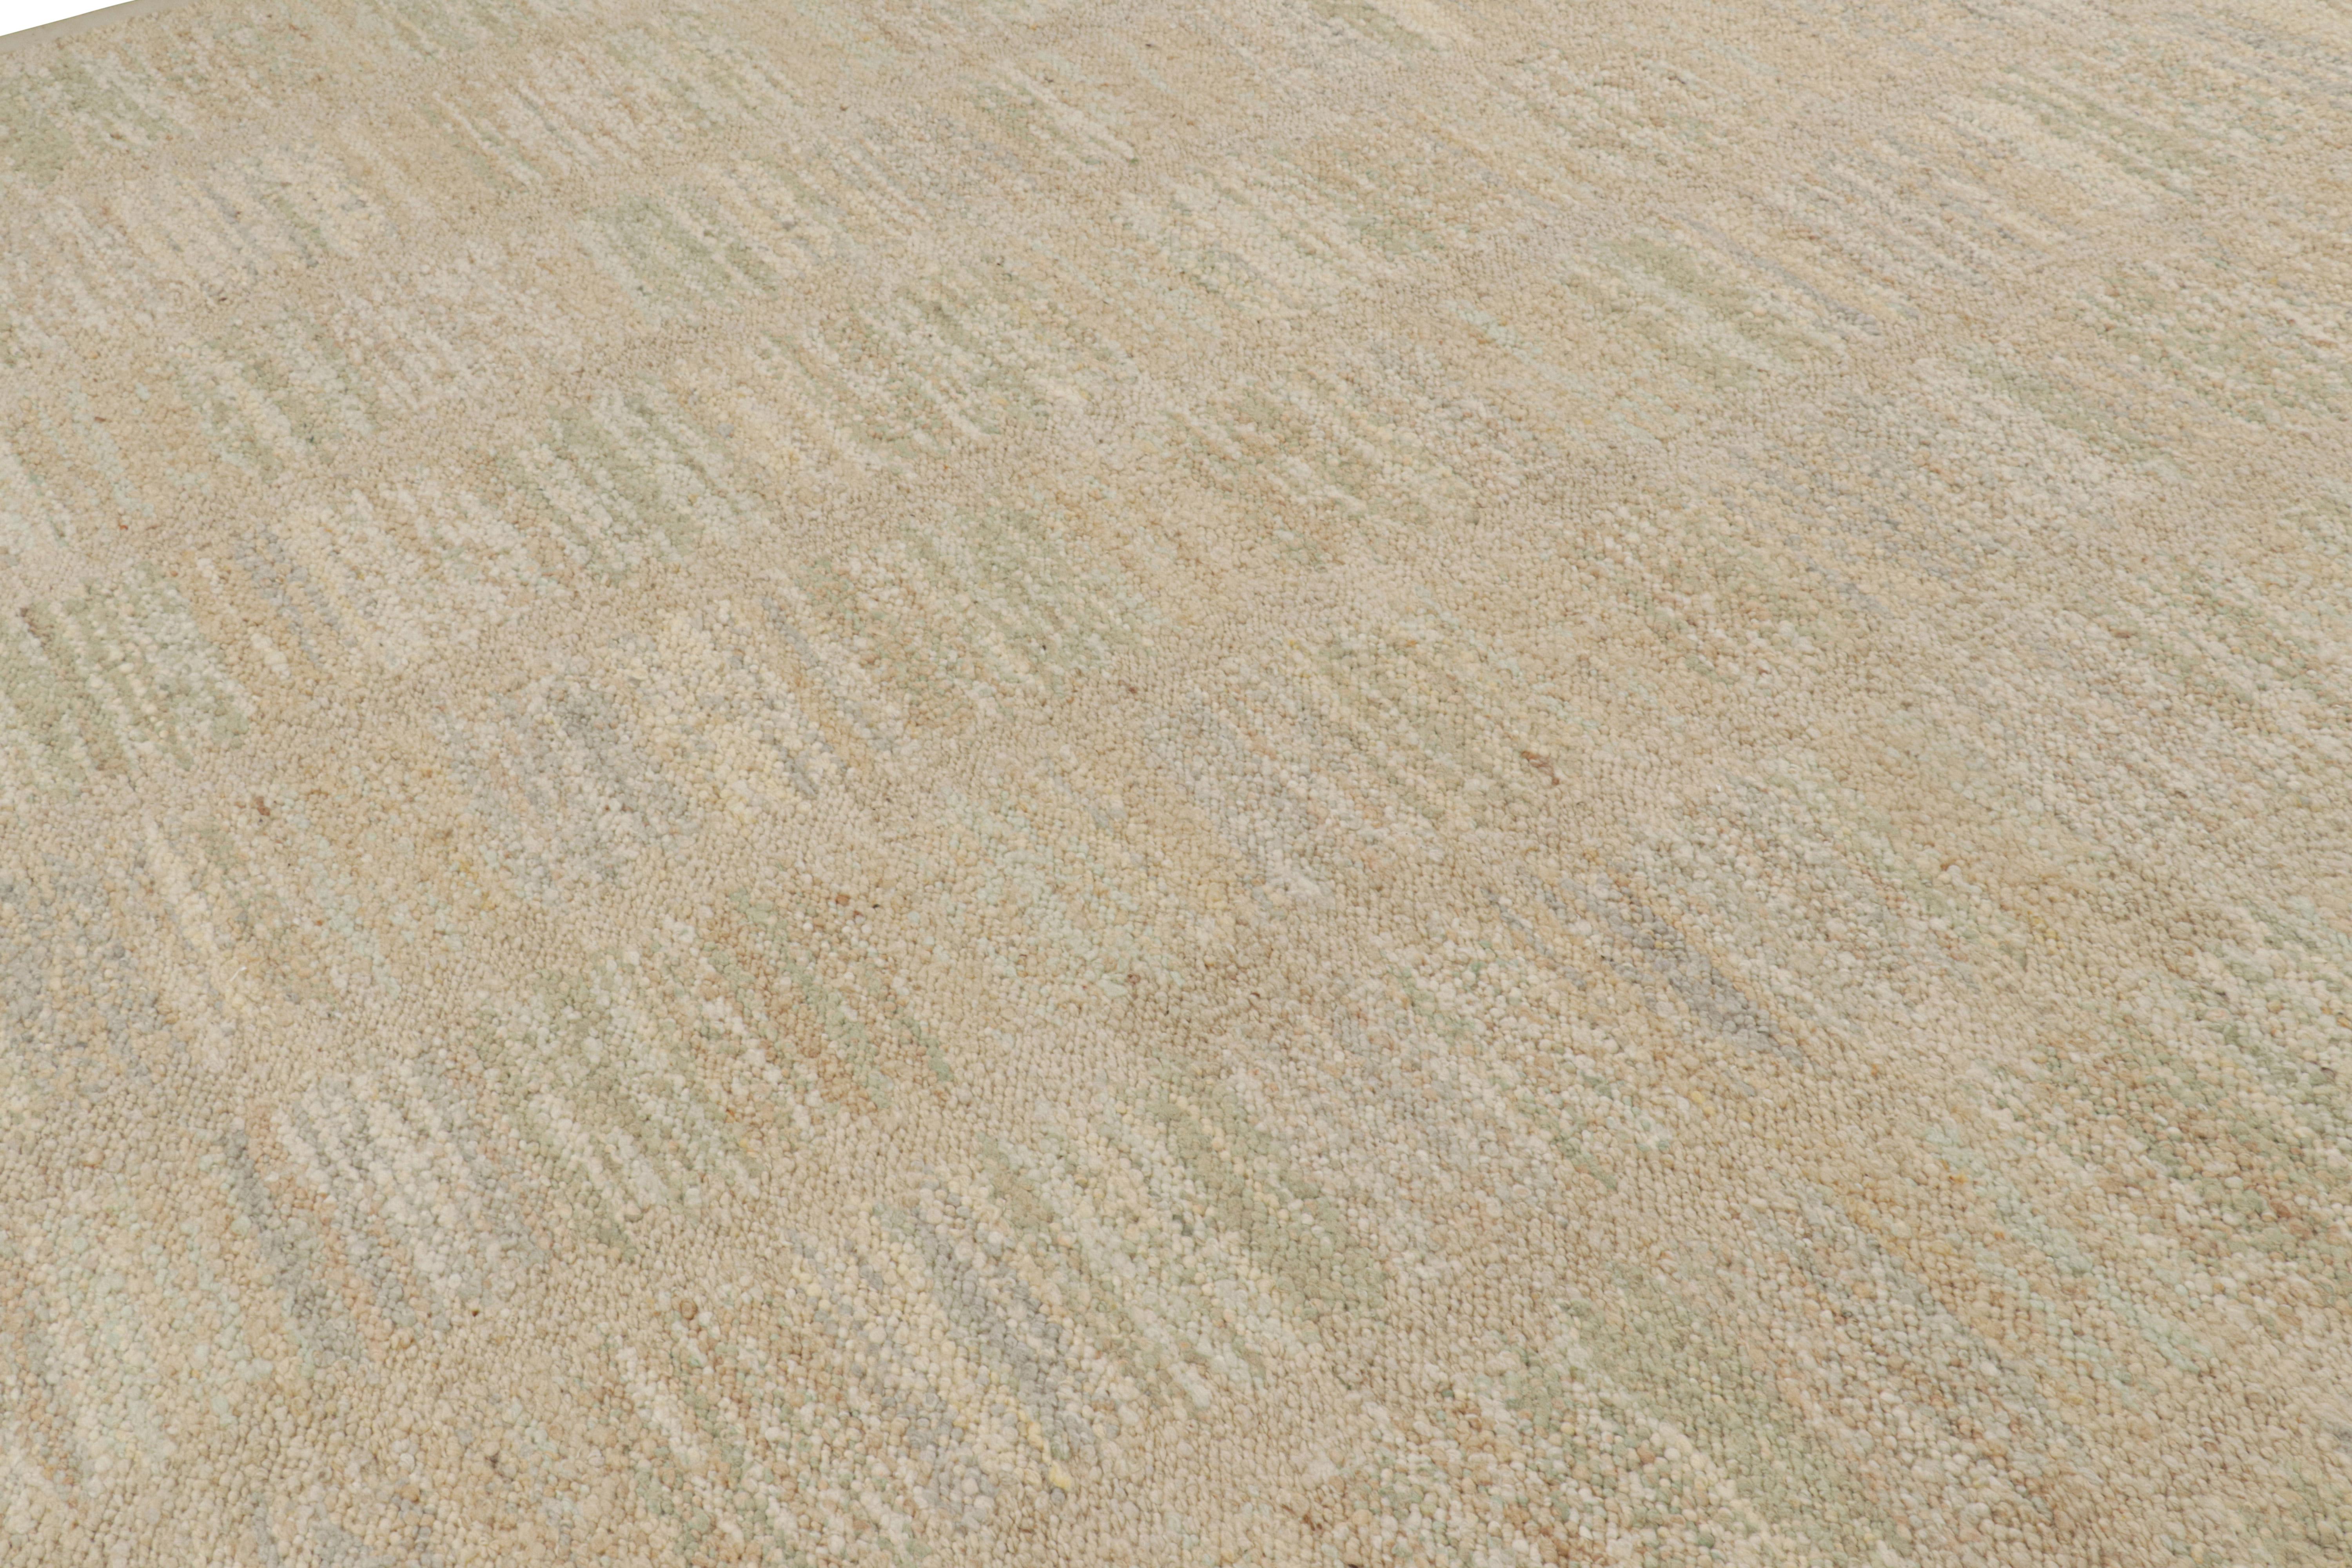 Ce tapis 10x14, tissé à la main en laine, est issu de la texture inventive 